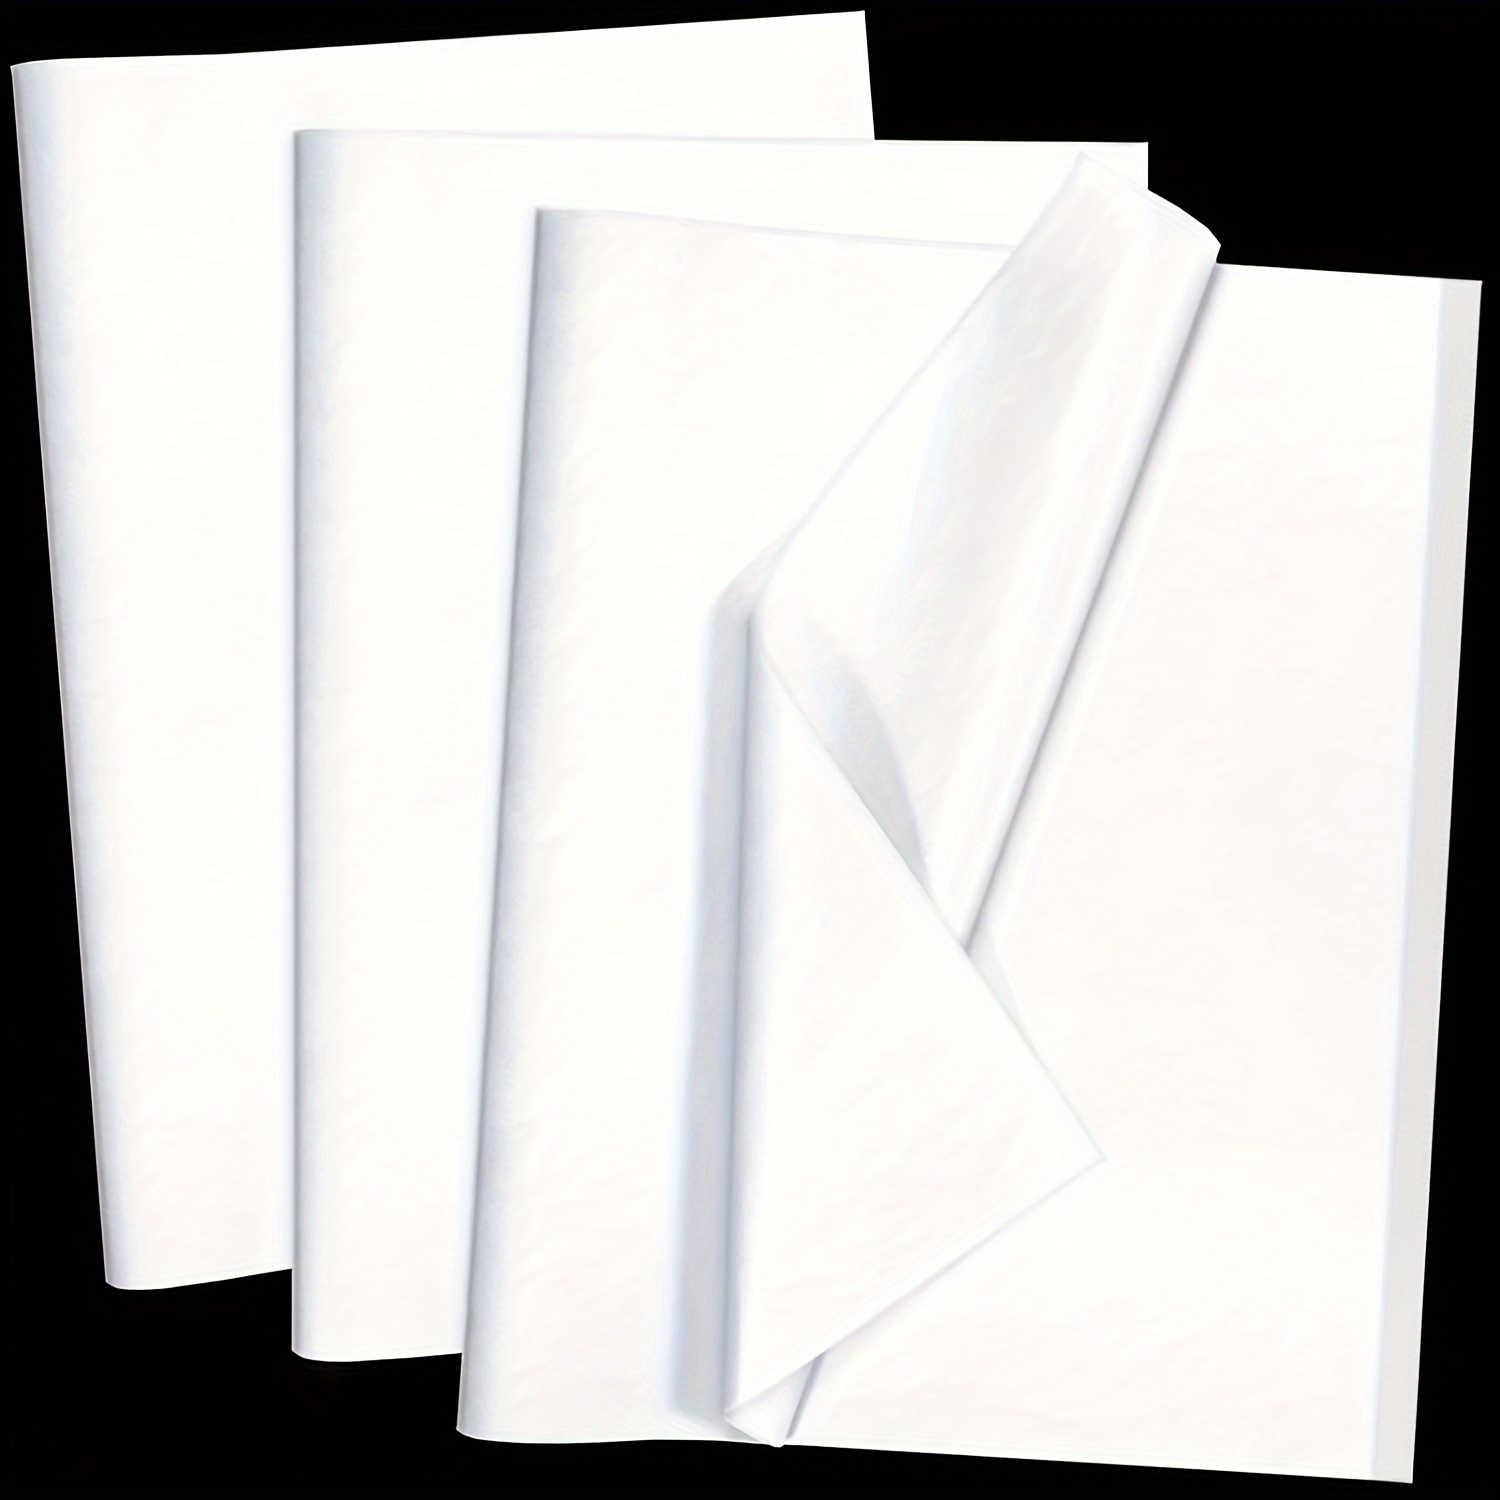 Unique - Unique Party White Tissue Paper Sheets 10 Pack (10 count), Shop